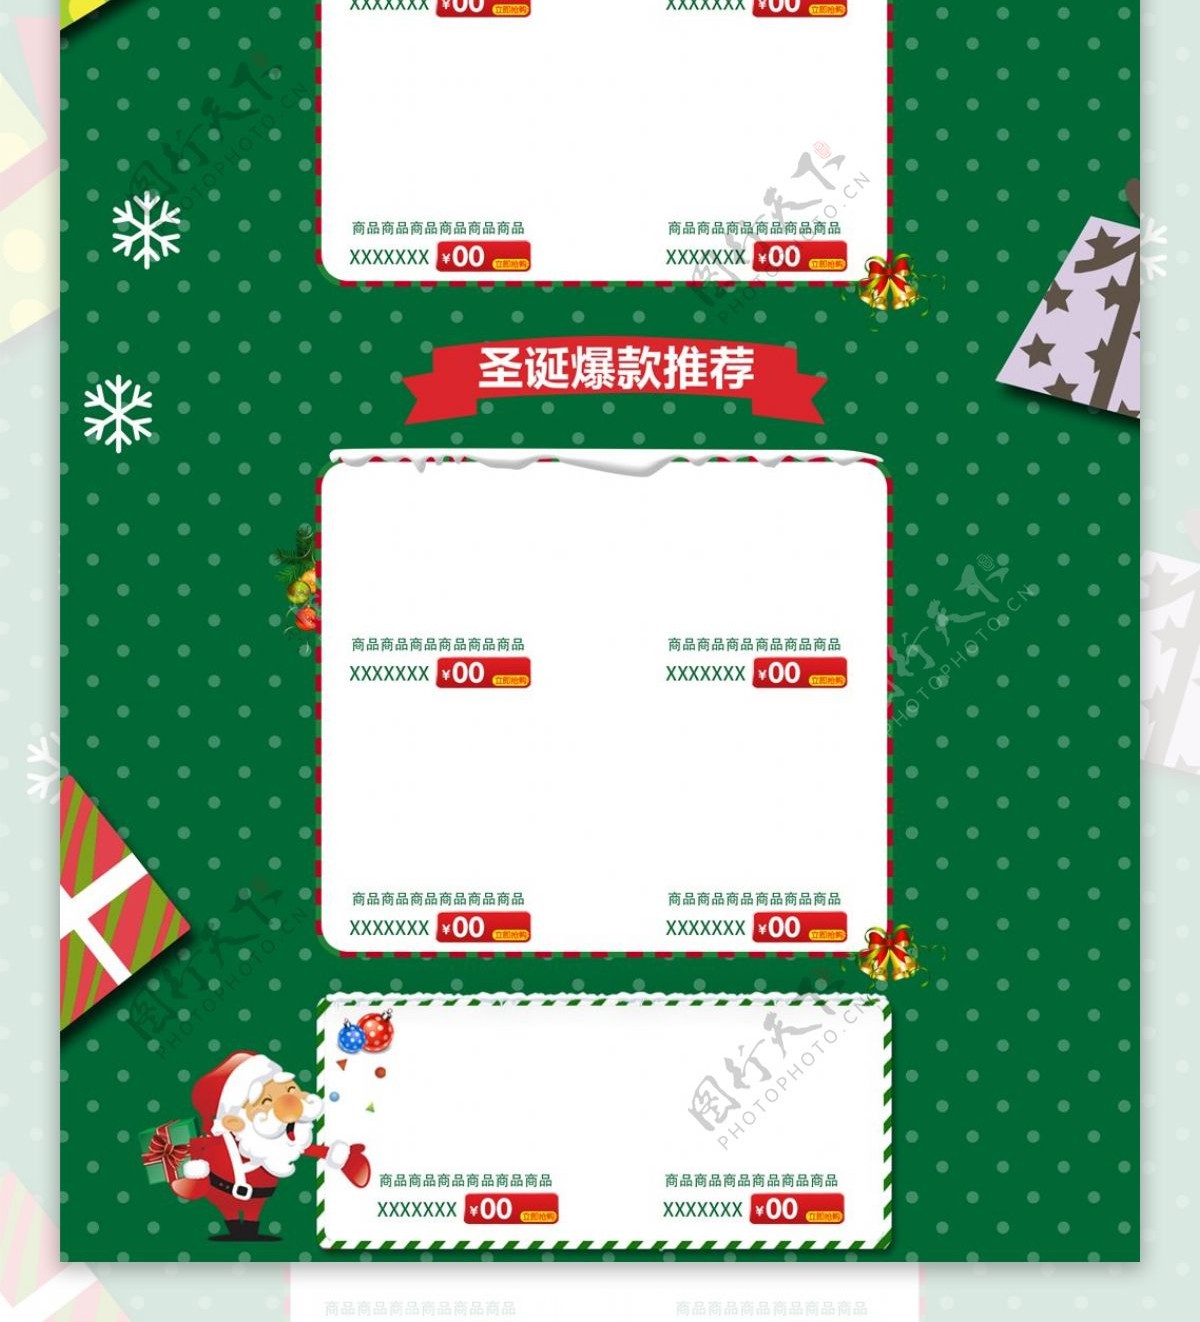 绿色简约化妆品圣诞欢乐季电商洗护首页模板